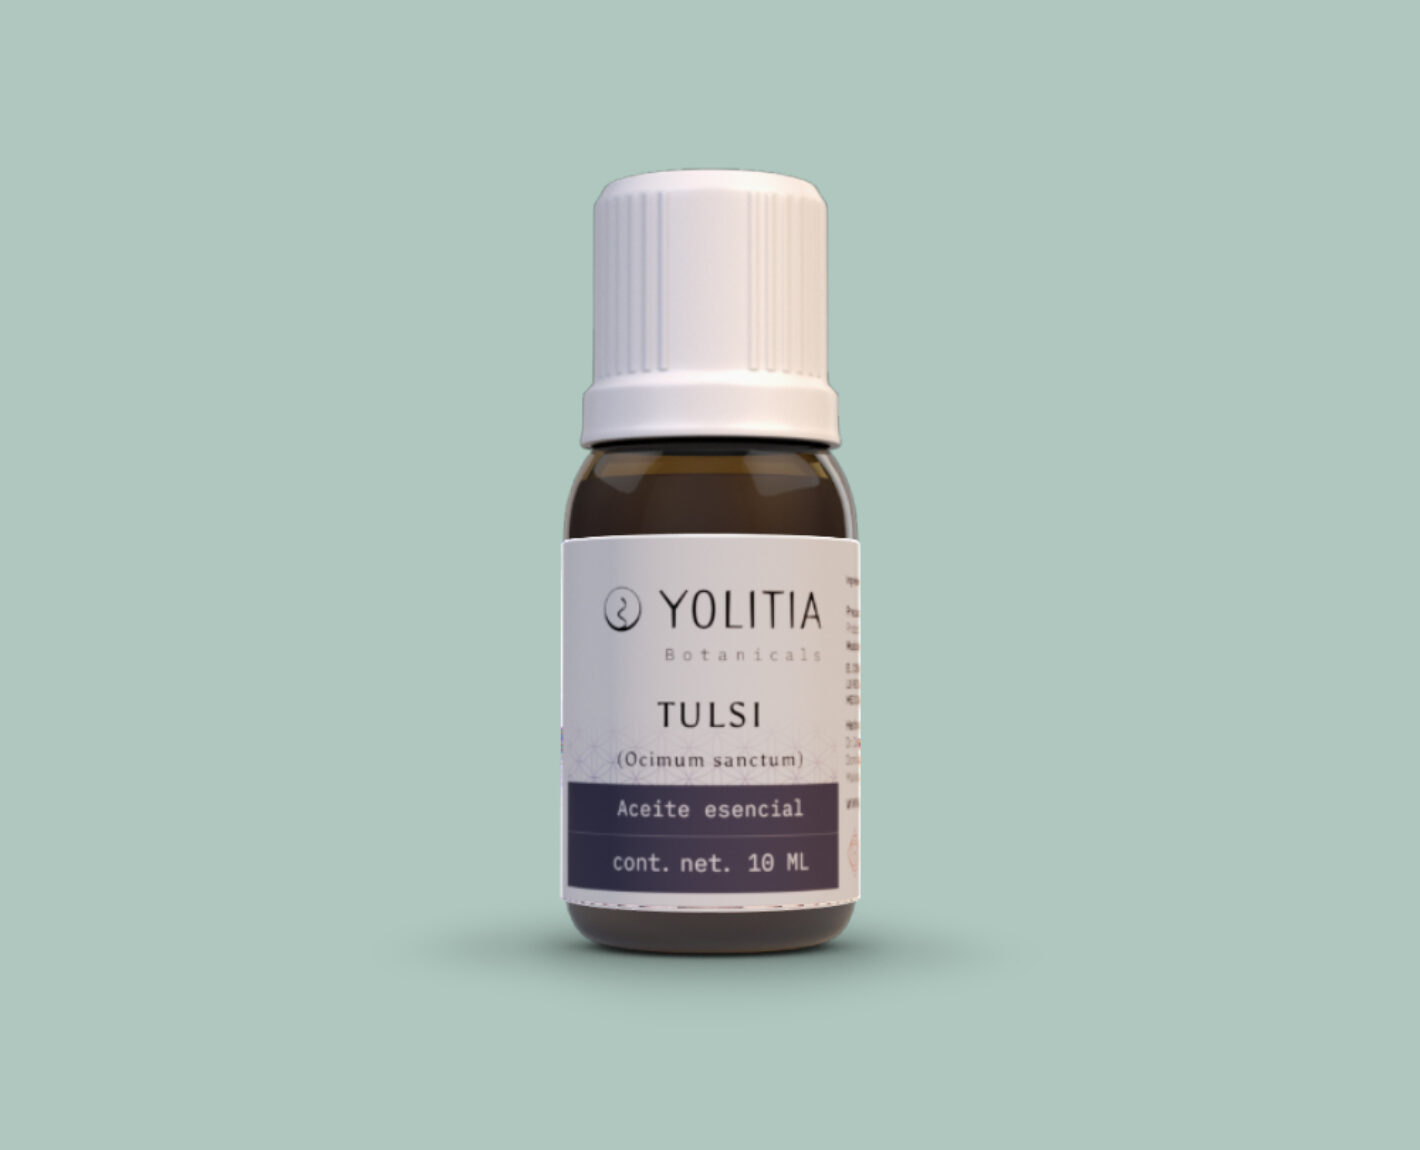 TULSI (Ocimum sanctum) Aceite esencial